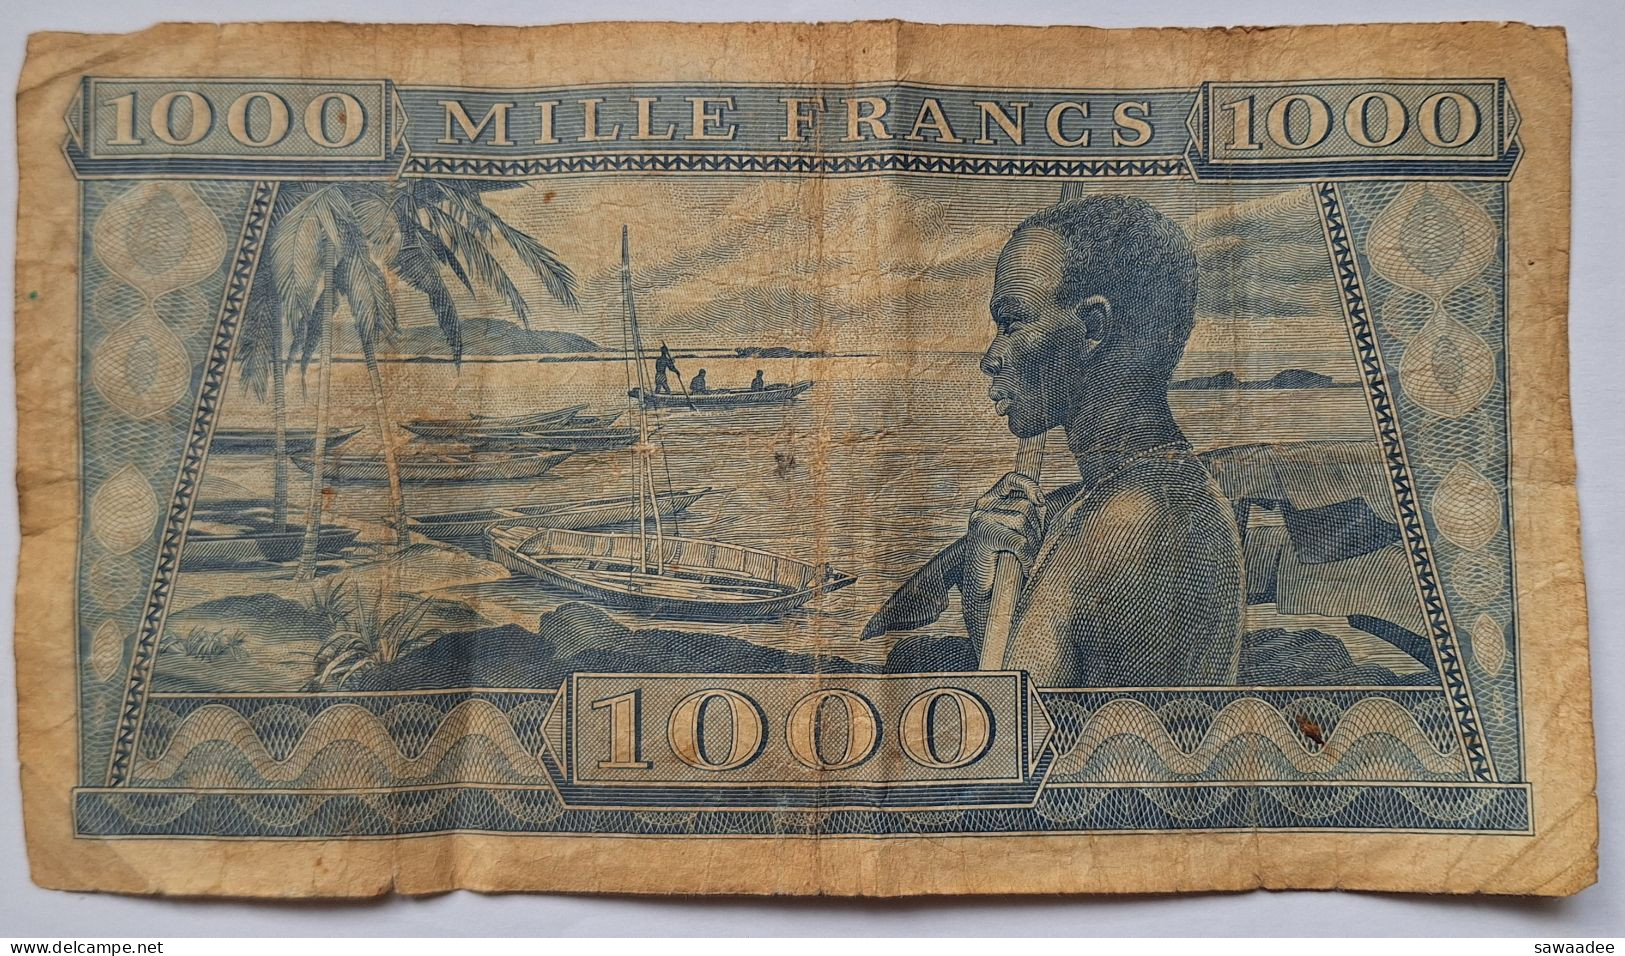 BILLET GUINEE - P.9 - 1000 FRANCS - 02/10/1958 - PORTRAIT HOMME - BORD DE MER - PIROGUES - HOMME - Guinee